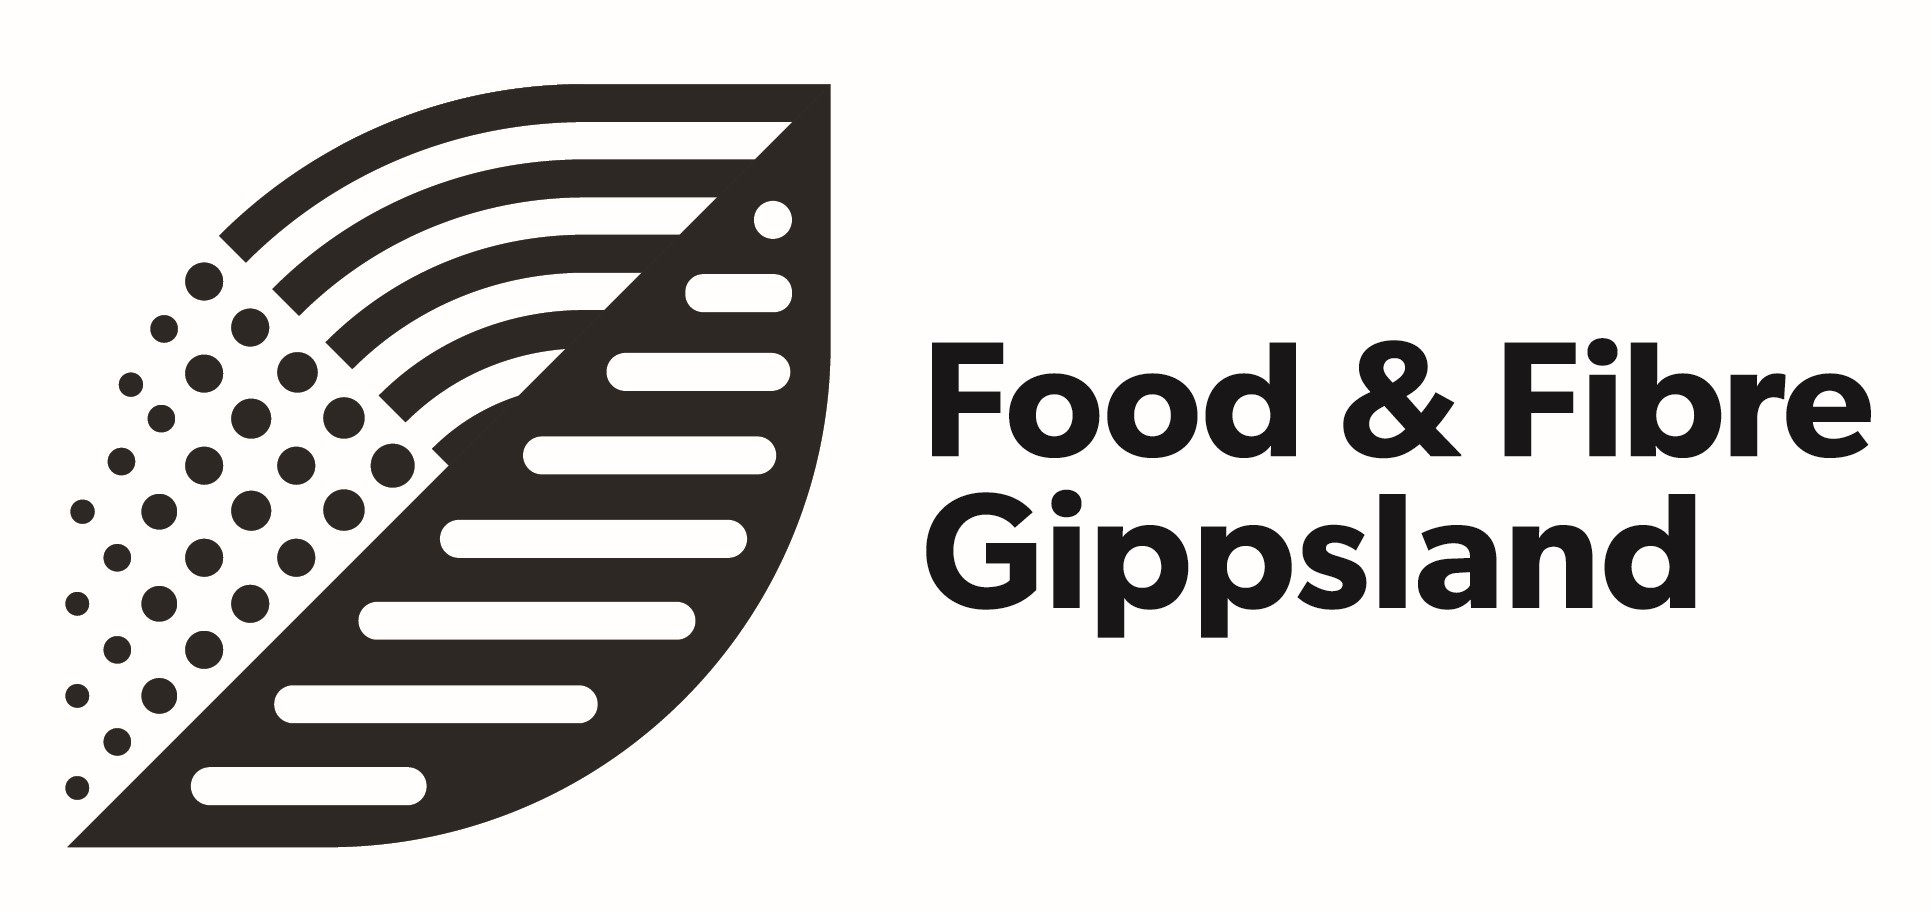 Food and Fibre Gippsland logo